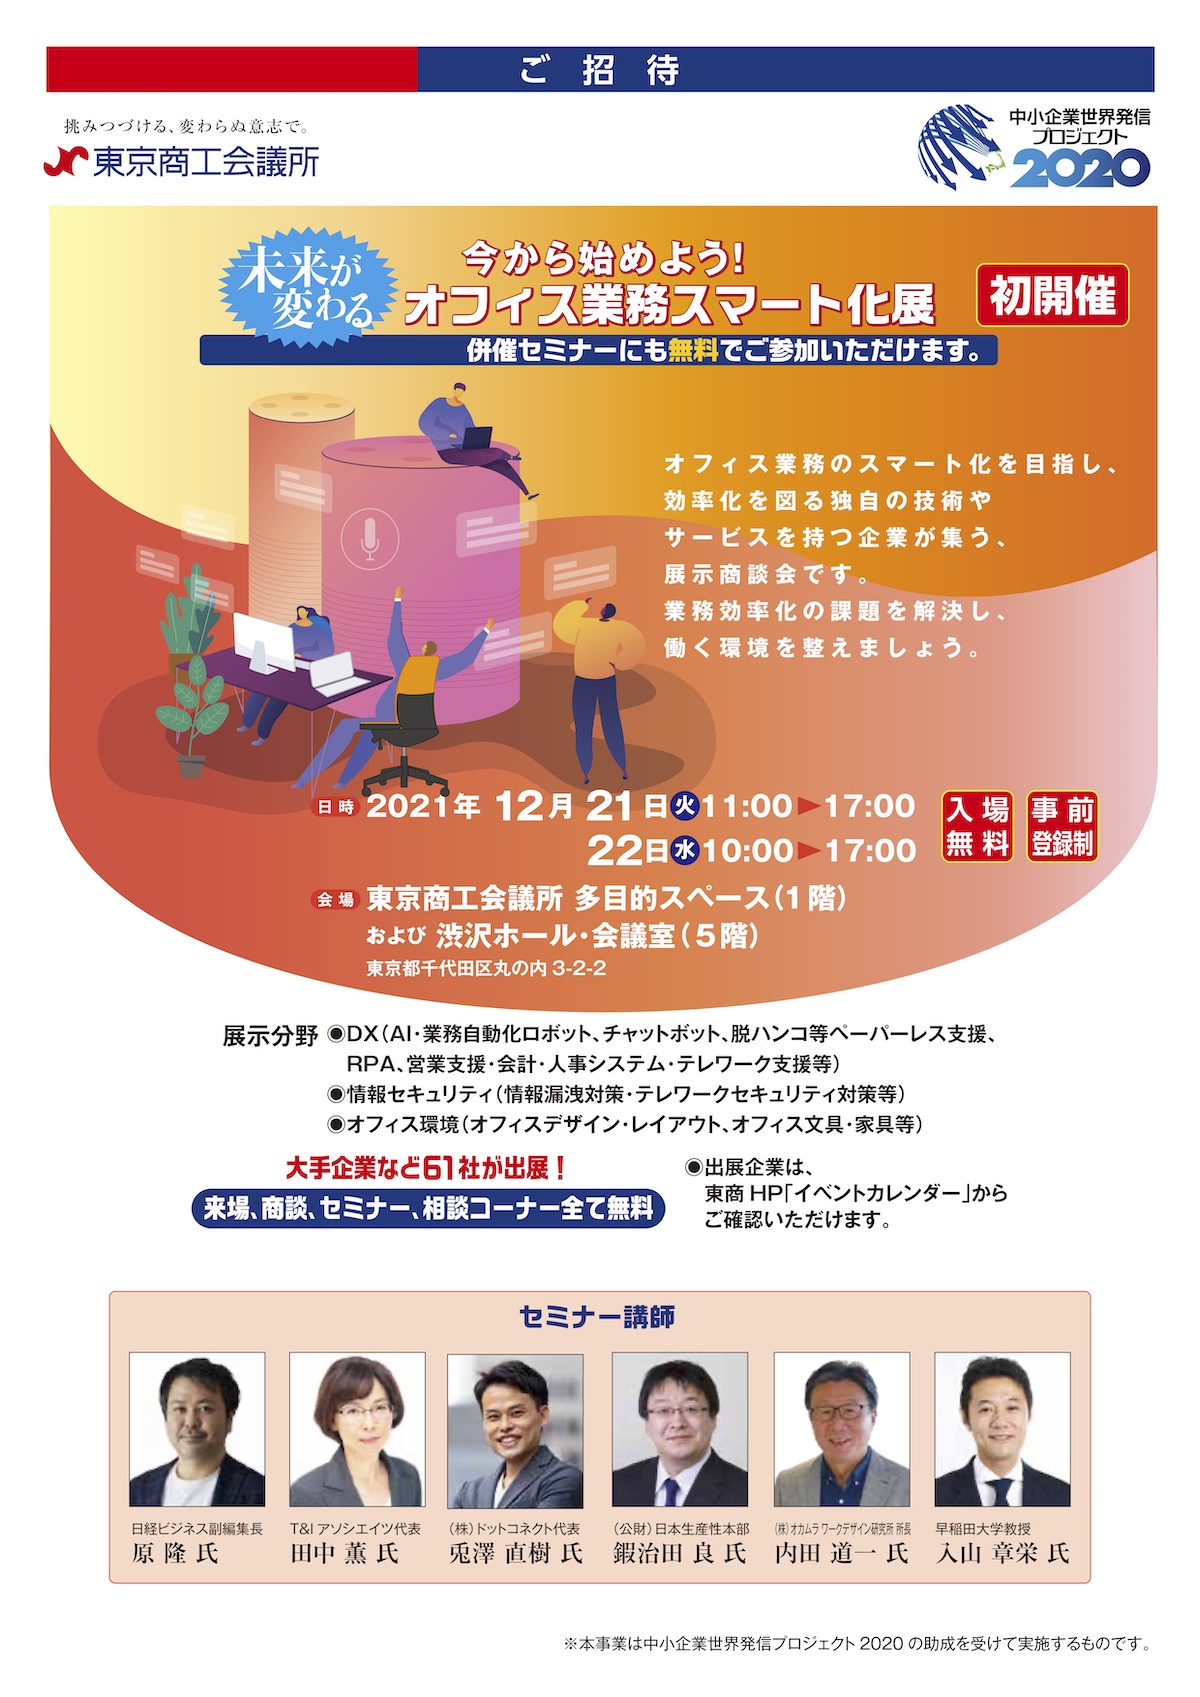 東京商工会議所が主催する『オフィス業務スマート化展』へ出展いたします